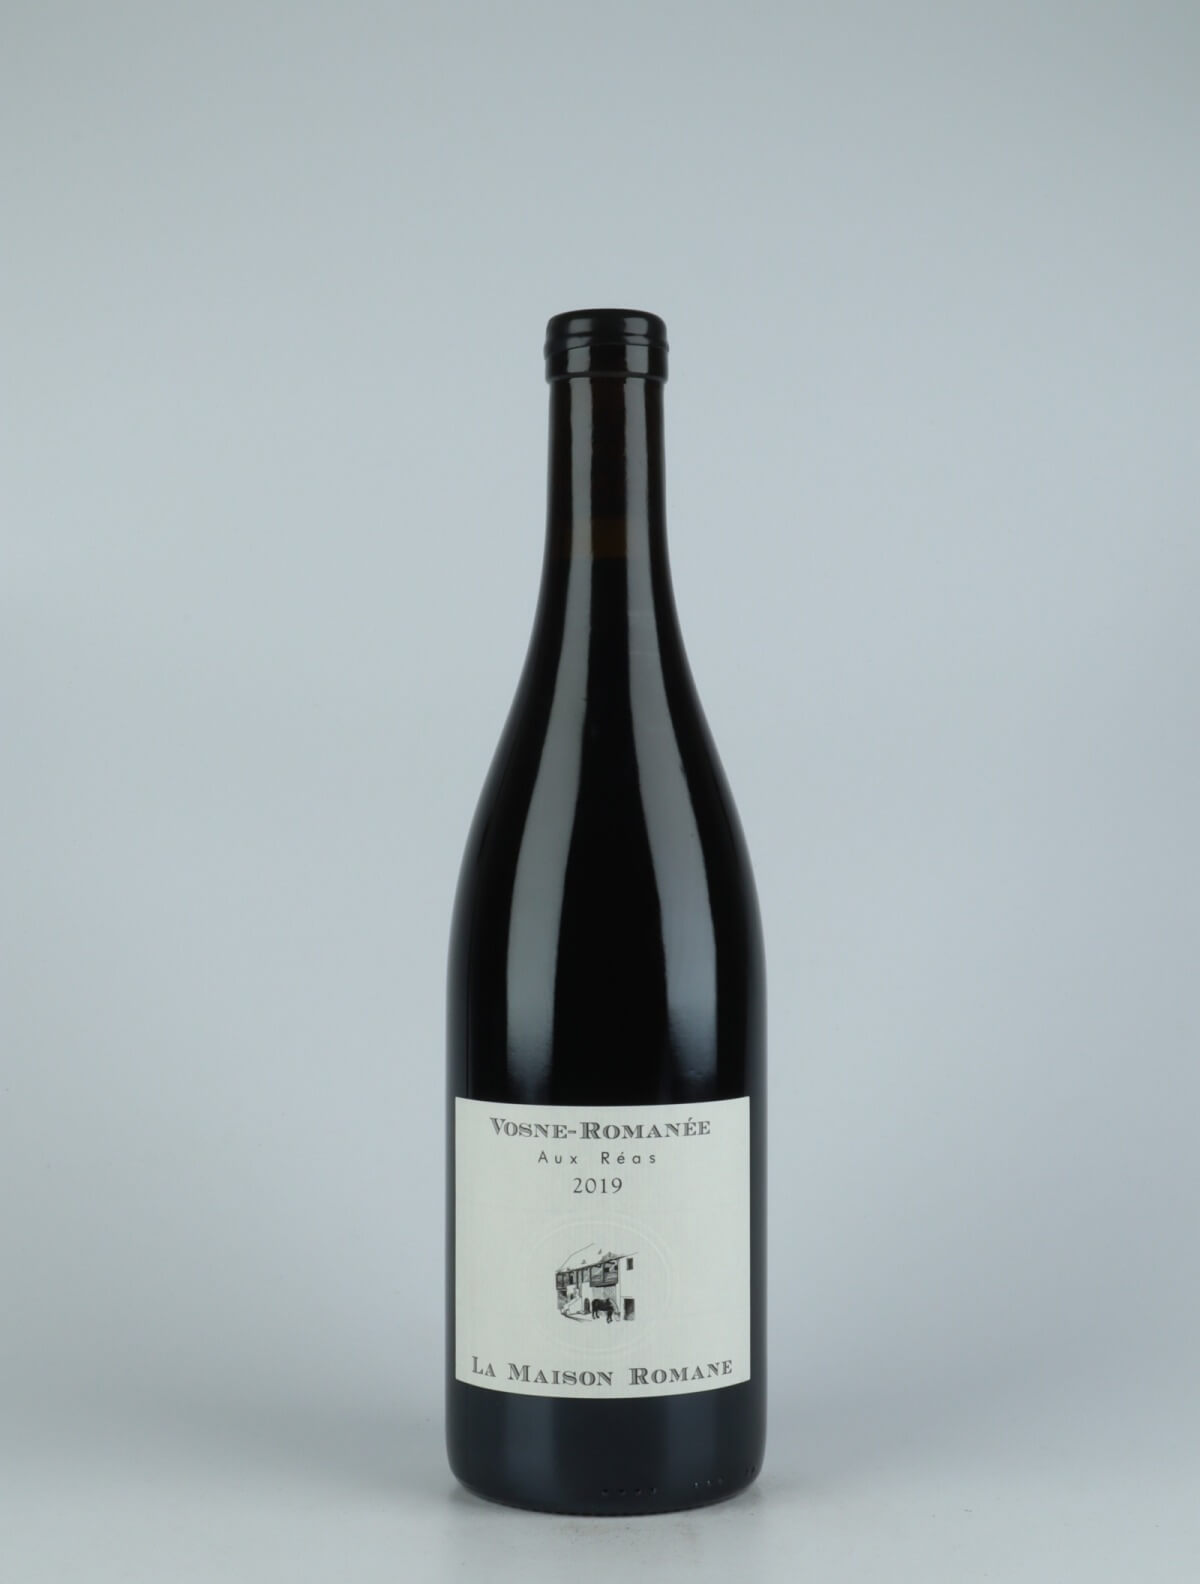 A bottle 2019 Vosne Romanée - Aux Réas Red wine from La Maison Romane, Burgundy in France